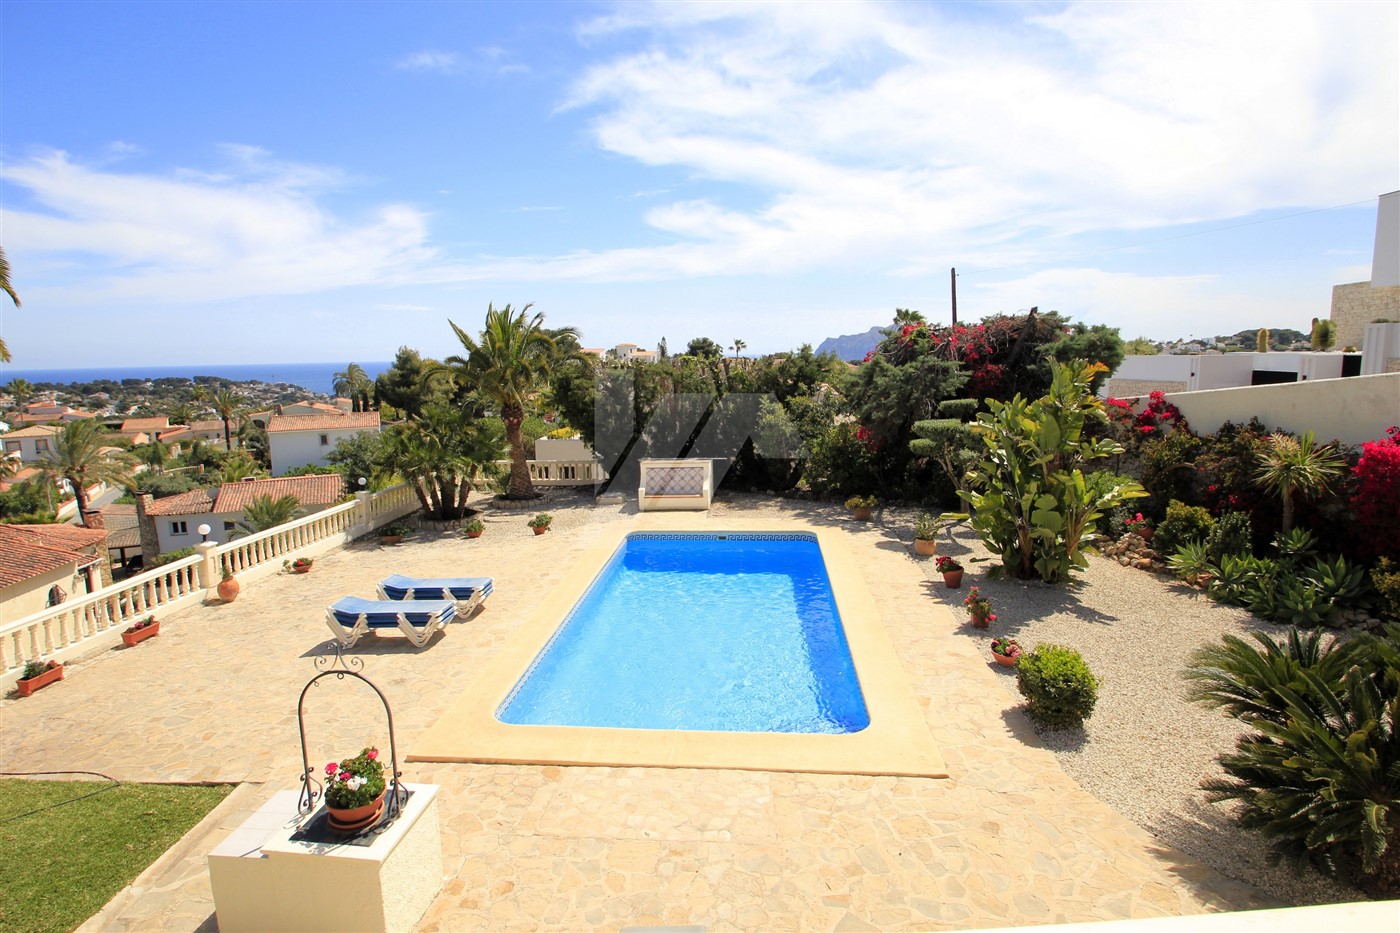 Exclusive villa with sea views in Benissa, Costa Blanca.